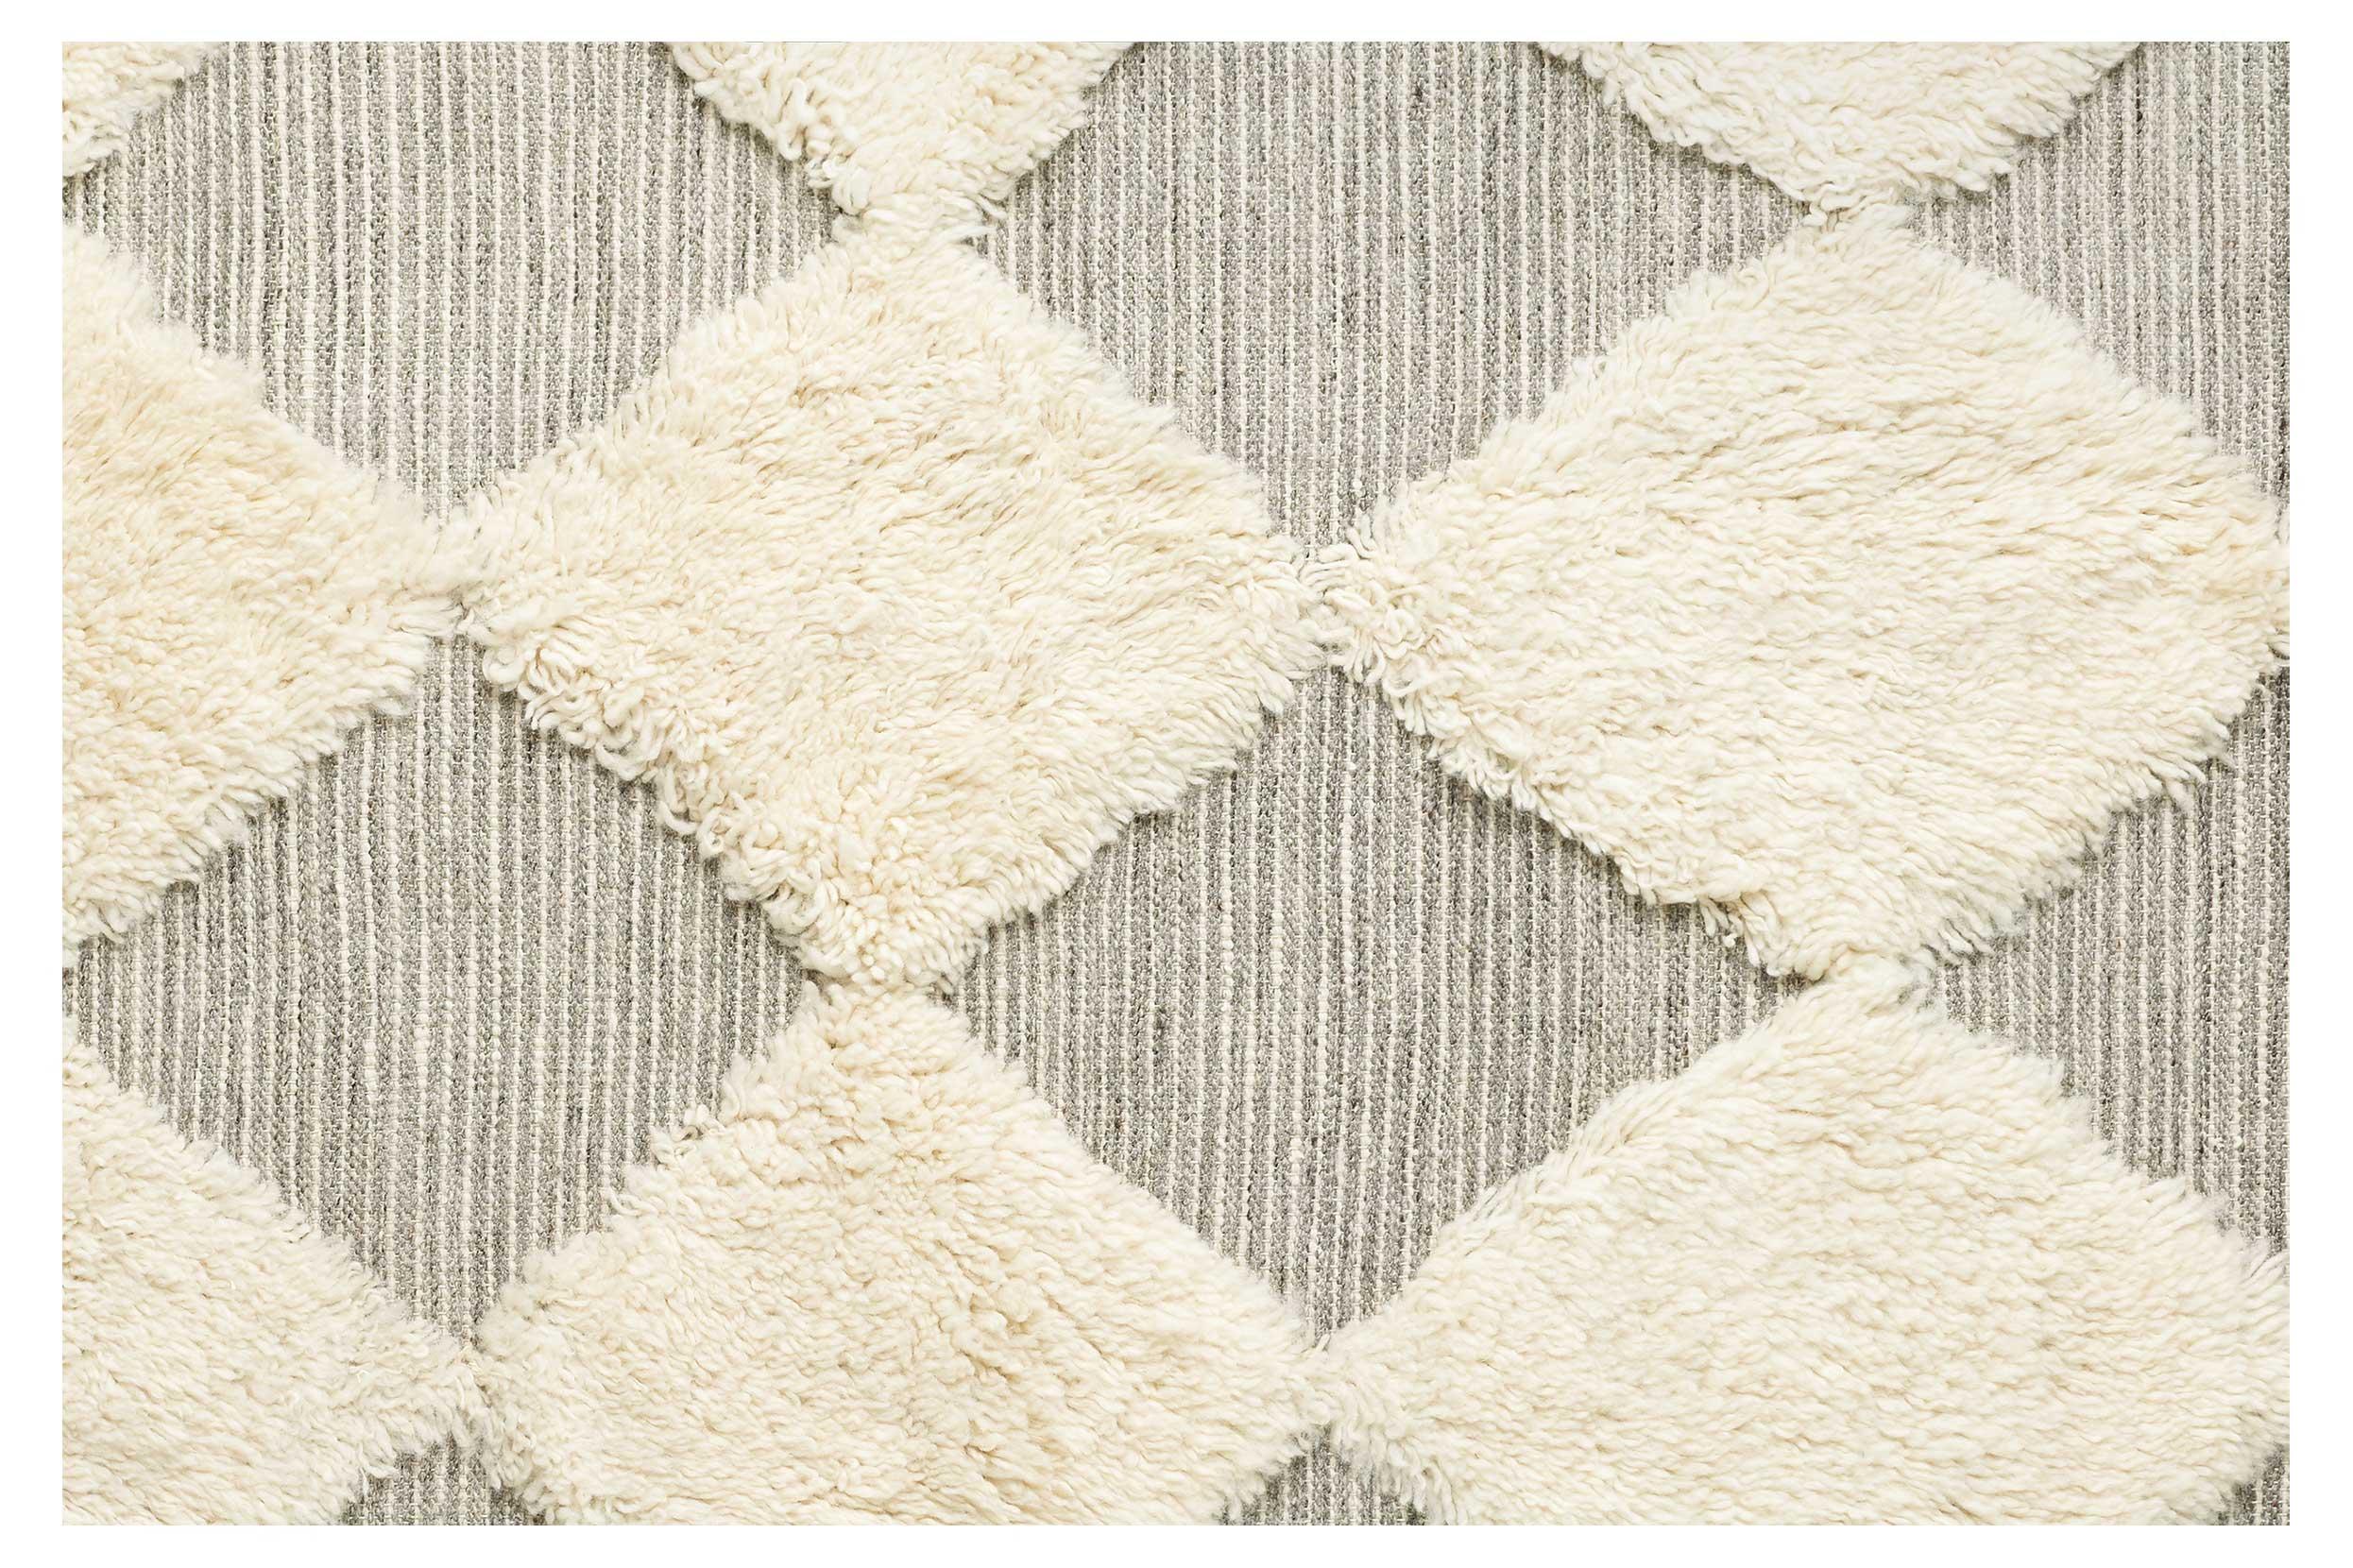 Der Teppich Chess Rya ist handgewebt und besteht aus 100% Wolle. Er hat ein einzigartiges Muster, da einige Teile des Teppichs flach gewebt sind und einige Teile einen zotteligen Flor haben. Erhältlich in Weiß und Grau. 
Material: Handgewebt, 100 %